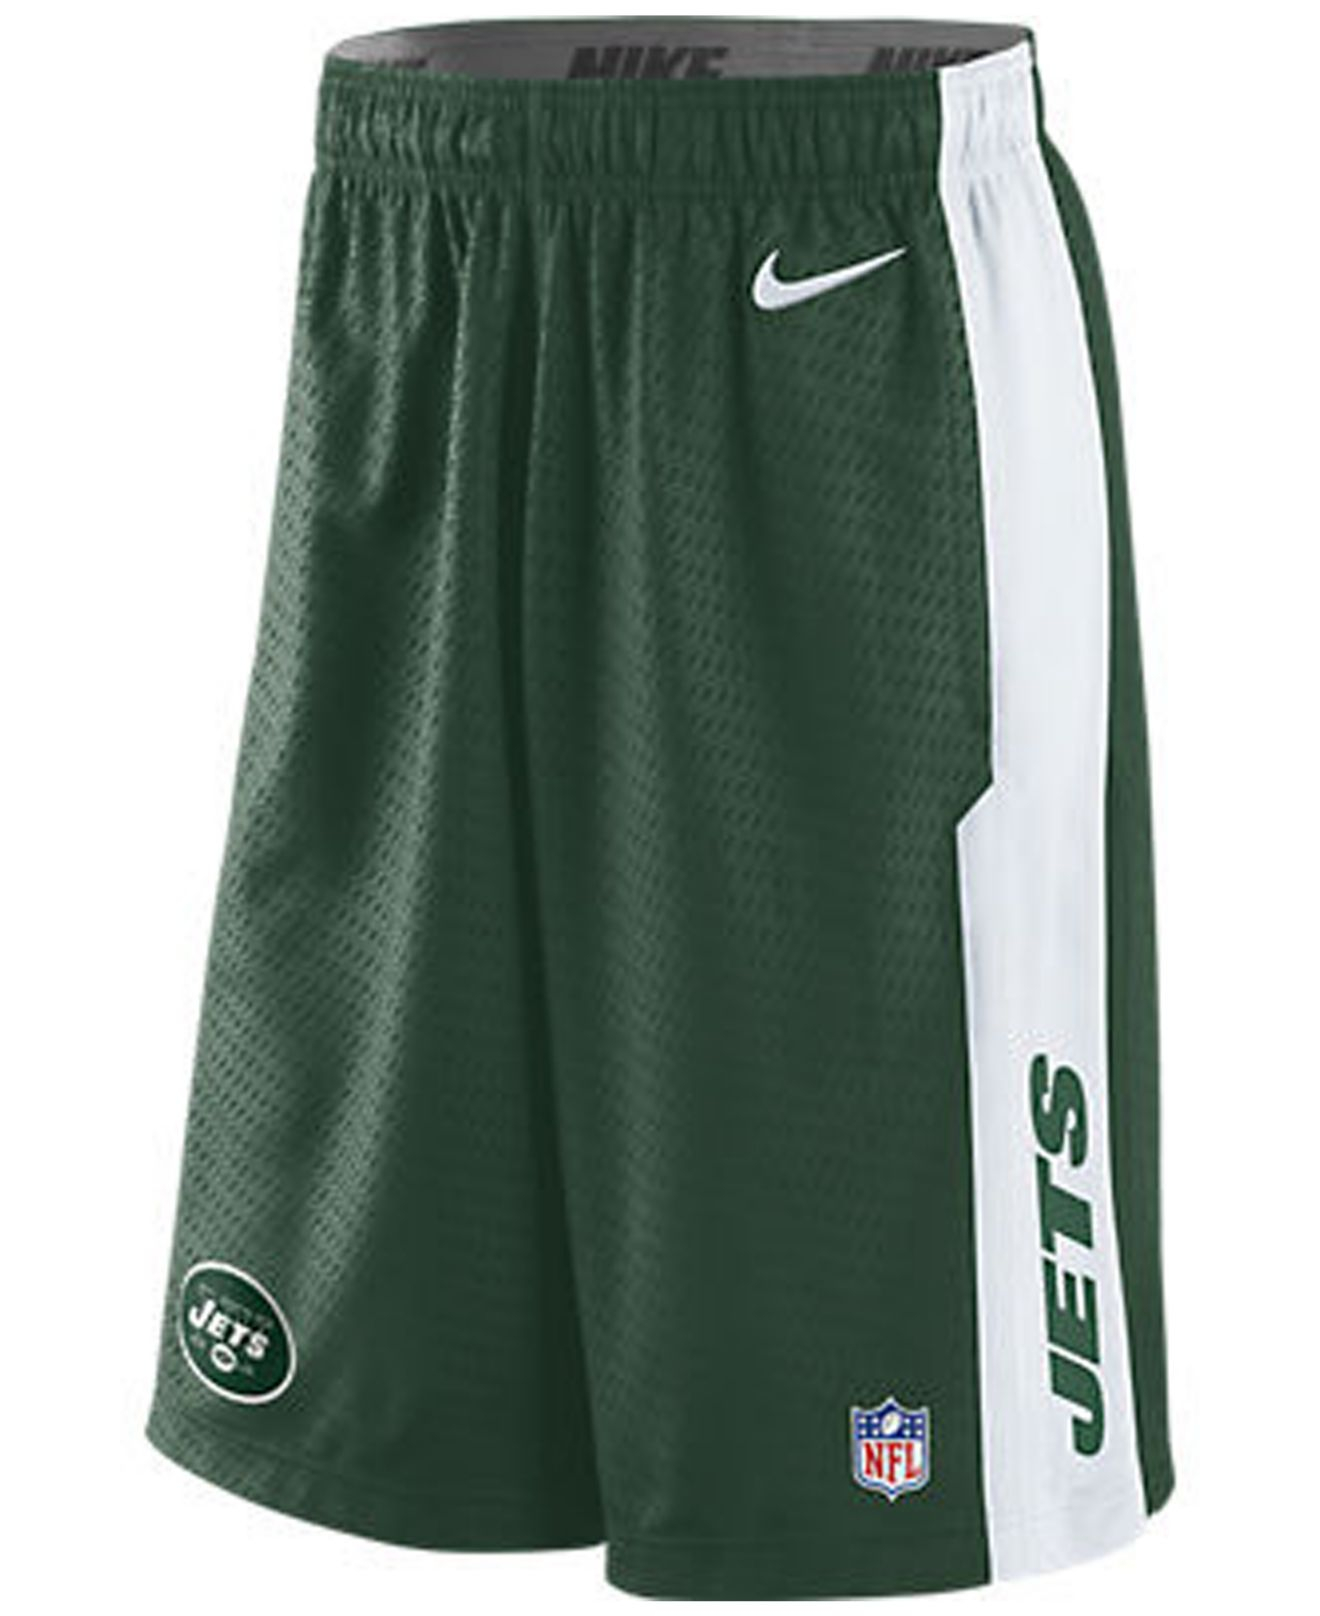 Lyst - Nike Men'S New York Jets Shorts in Green for Men